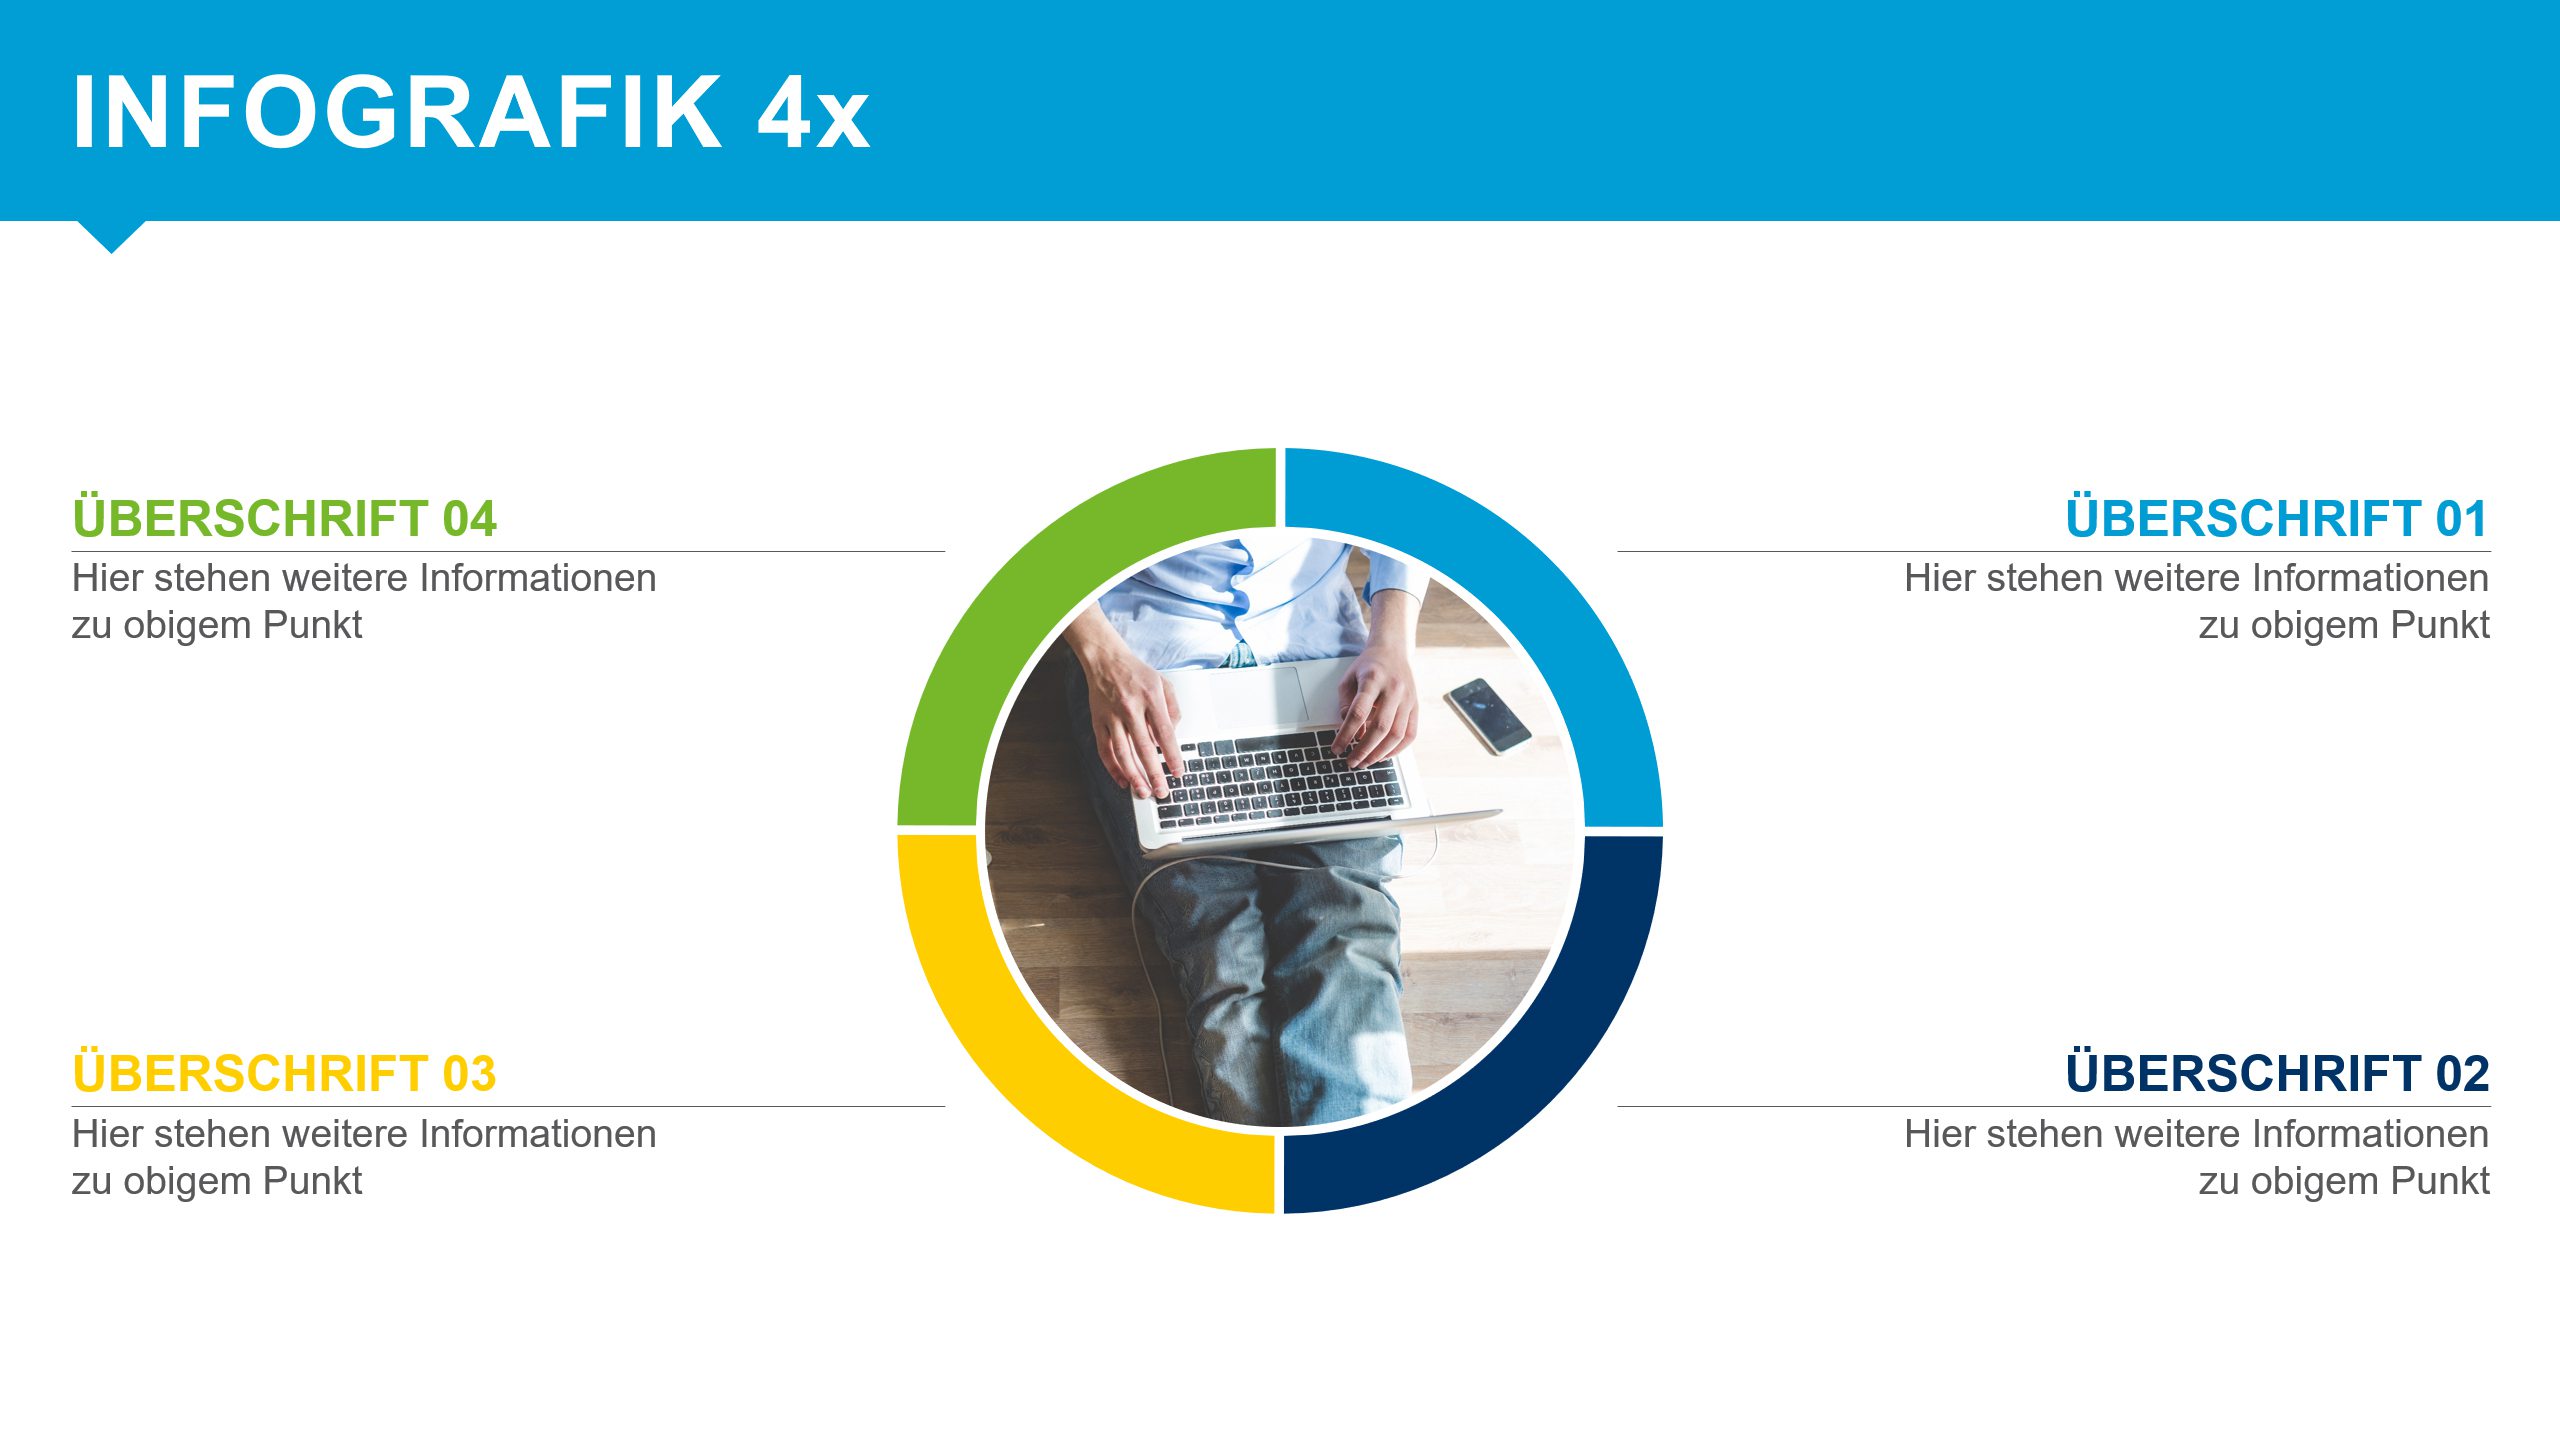 IHK PowerPoint Präsentation Infografik 4x